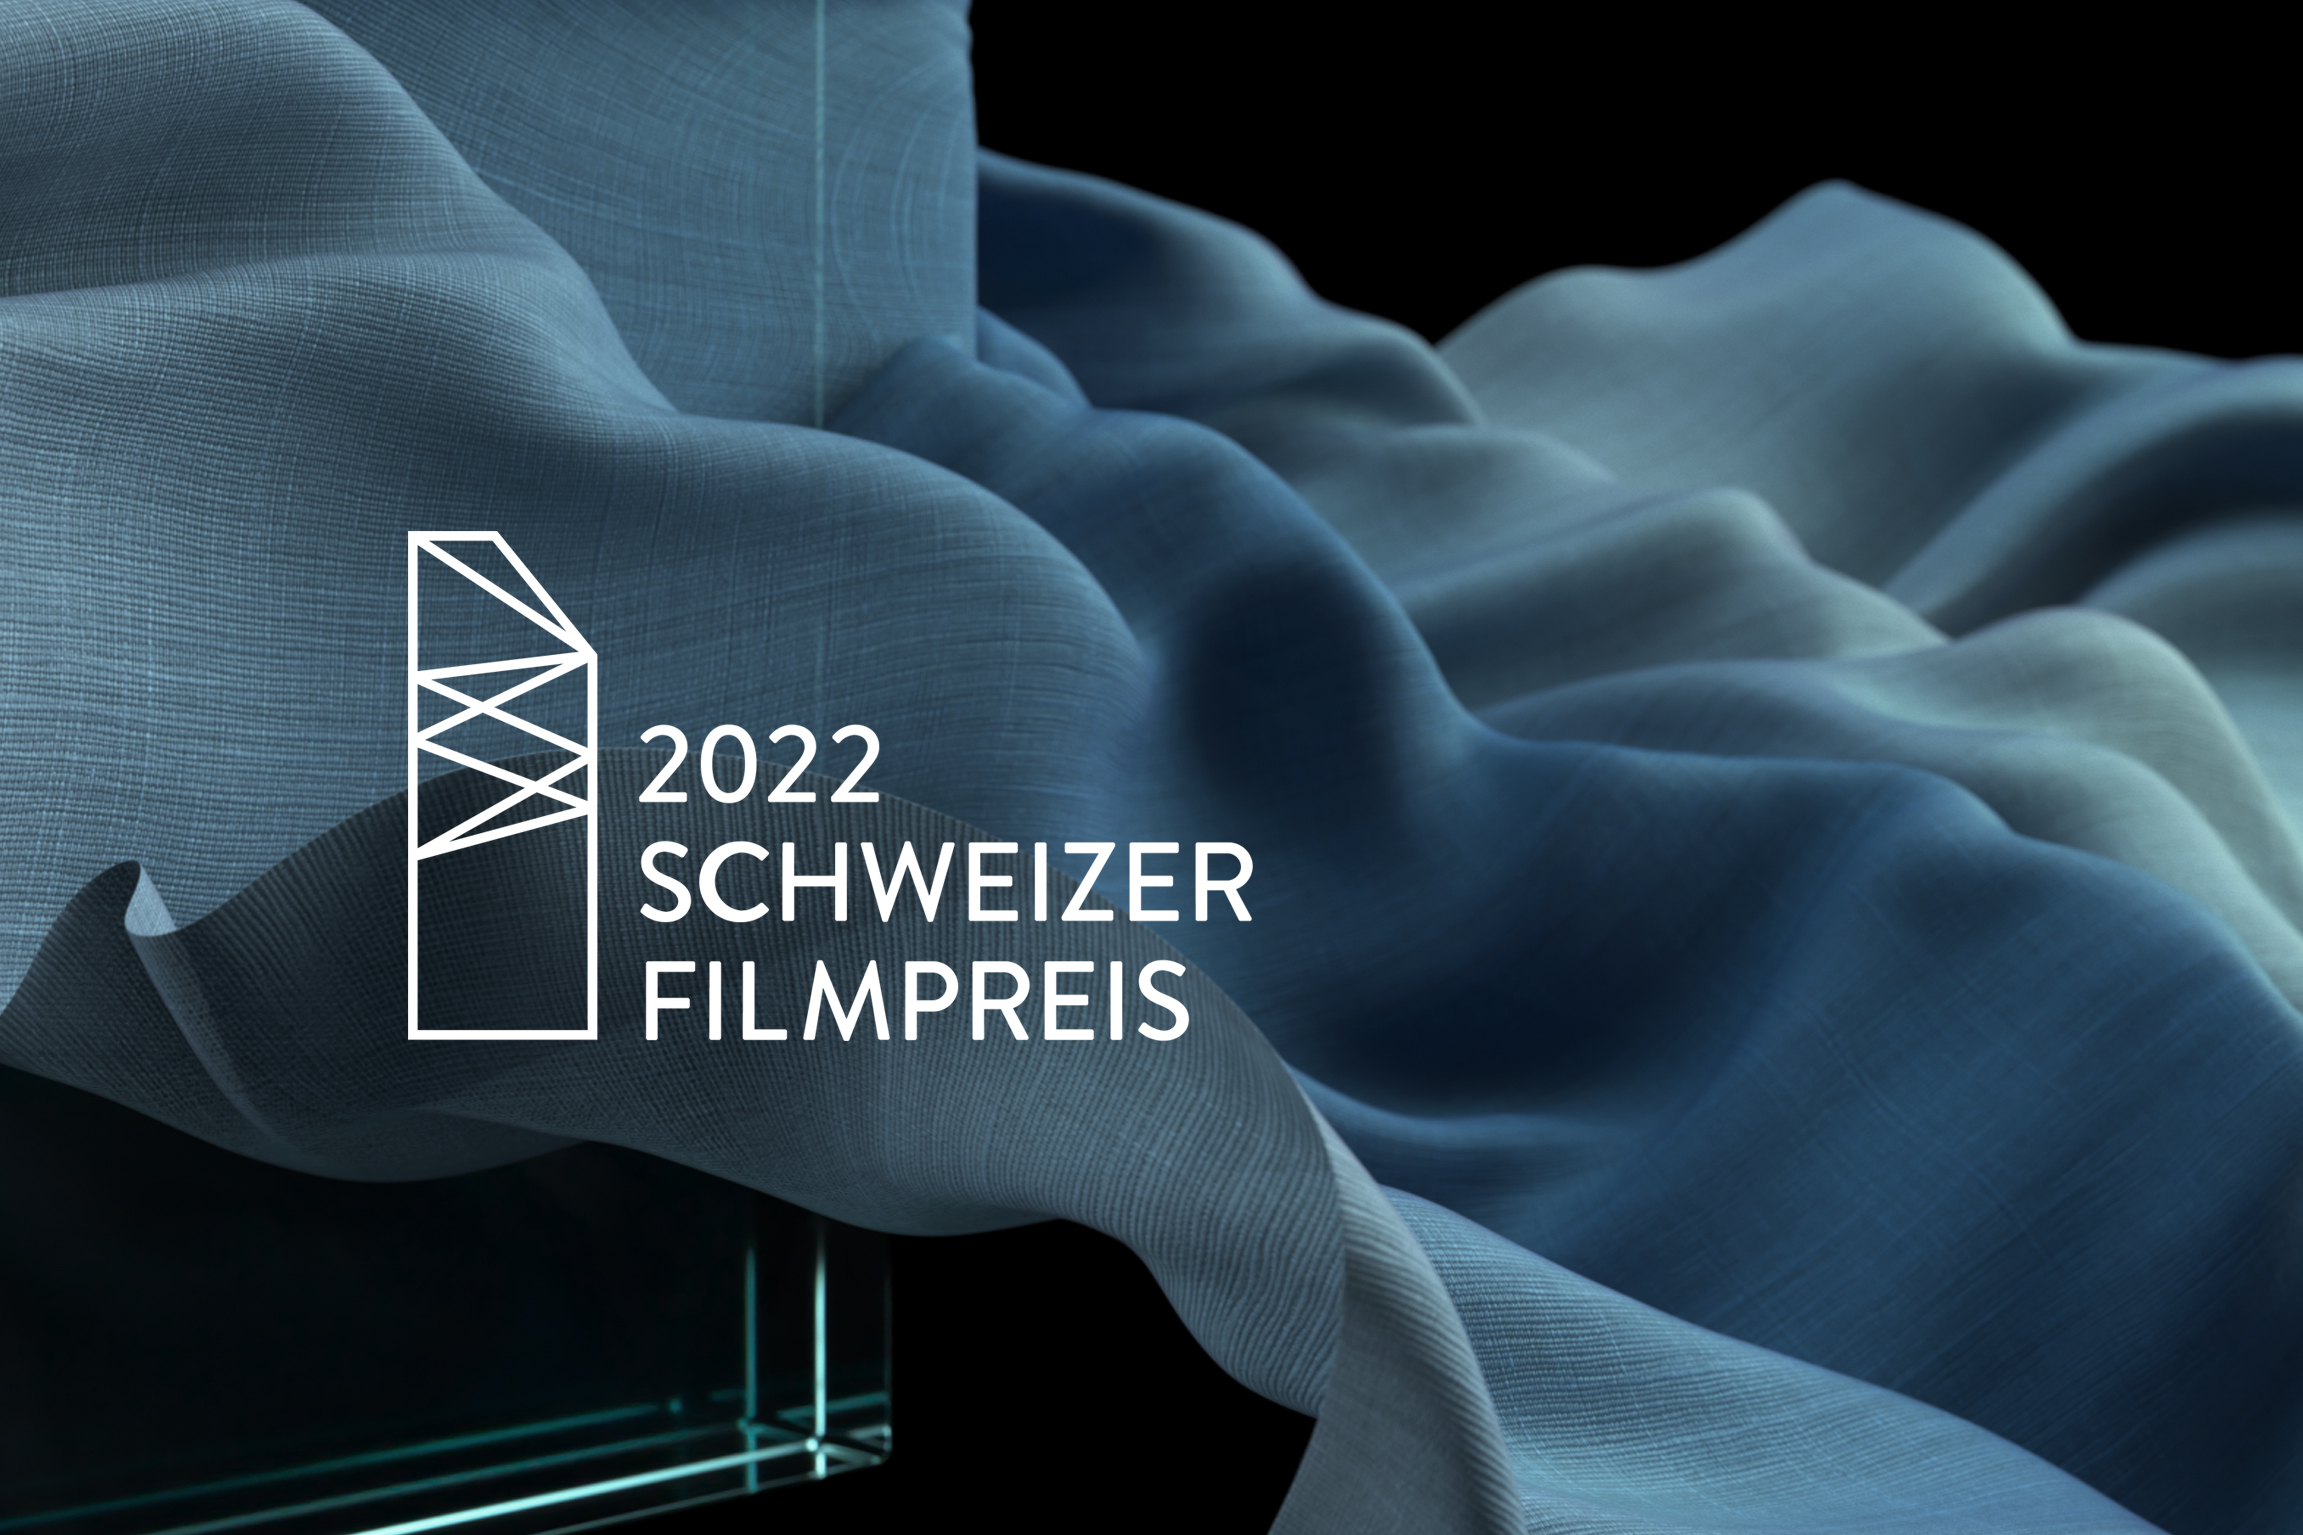 Schweizer Filmpreis 2022 Keyvisual